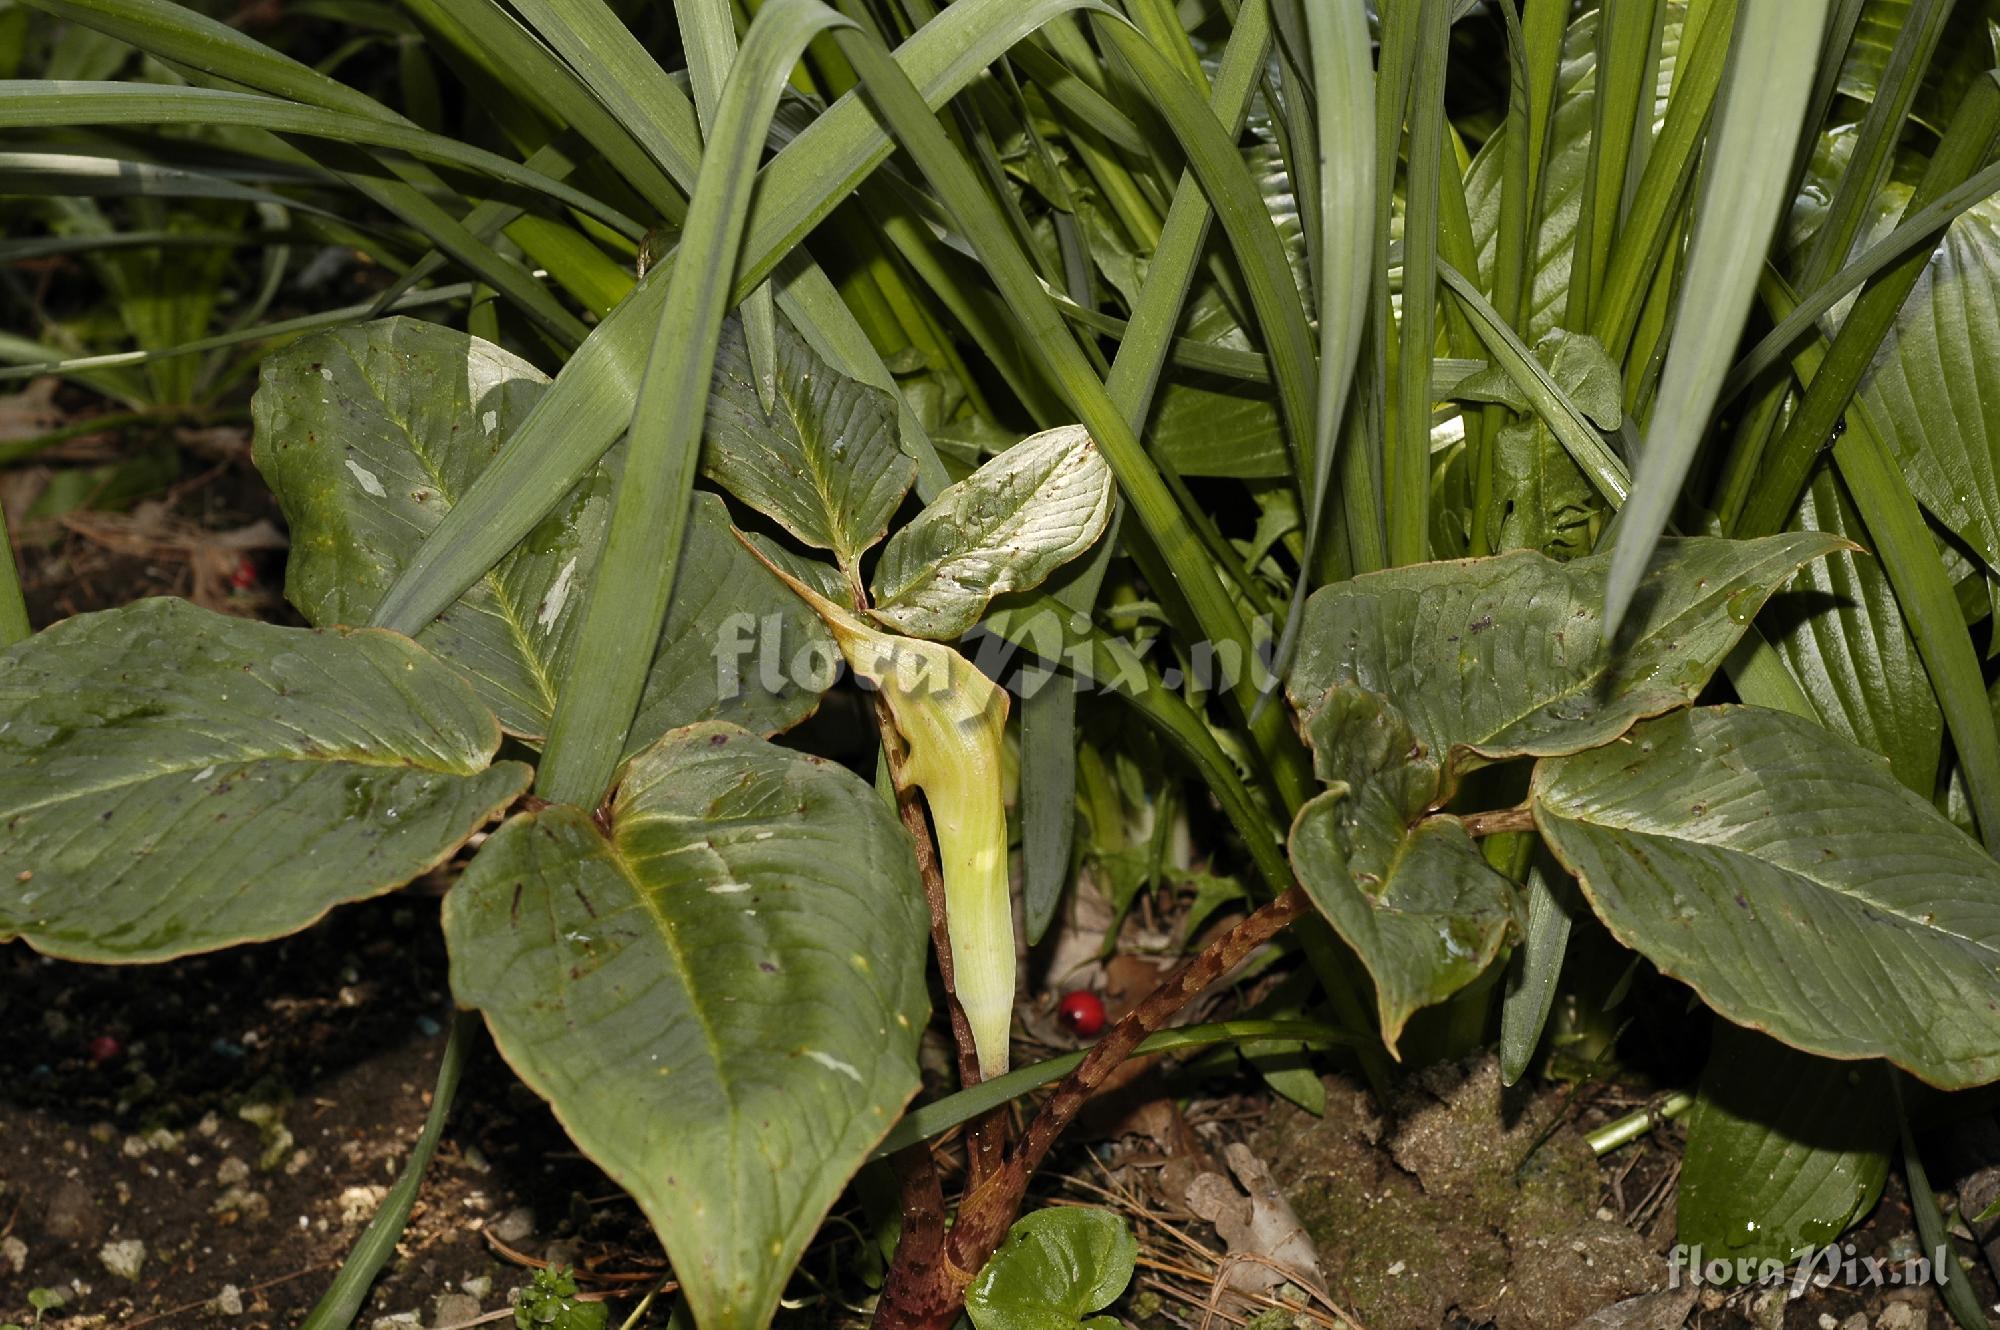 Arisaema Lobatum variety